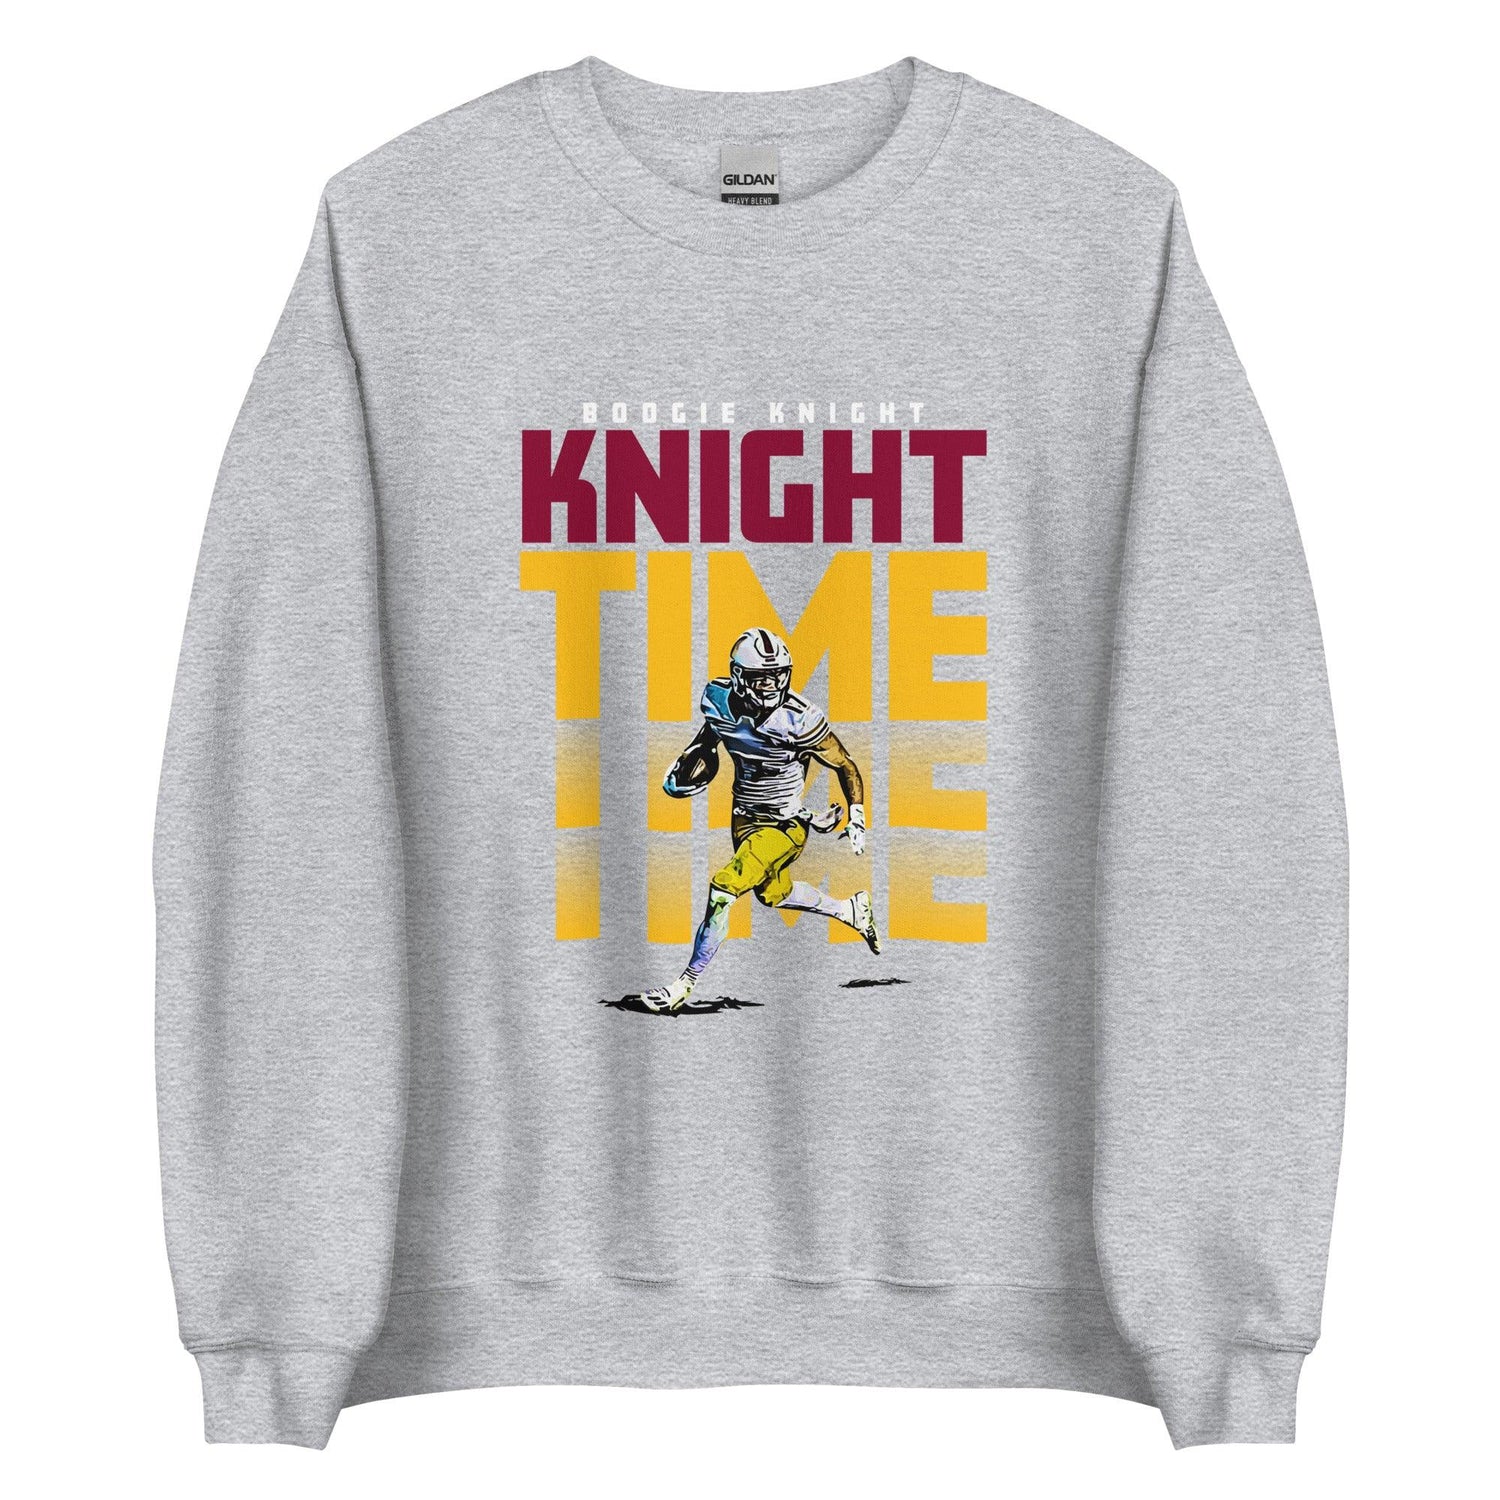 Boogie Knight "Night Time" Sweatshirt - Fan Arch